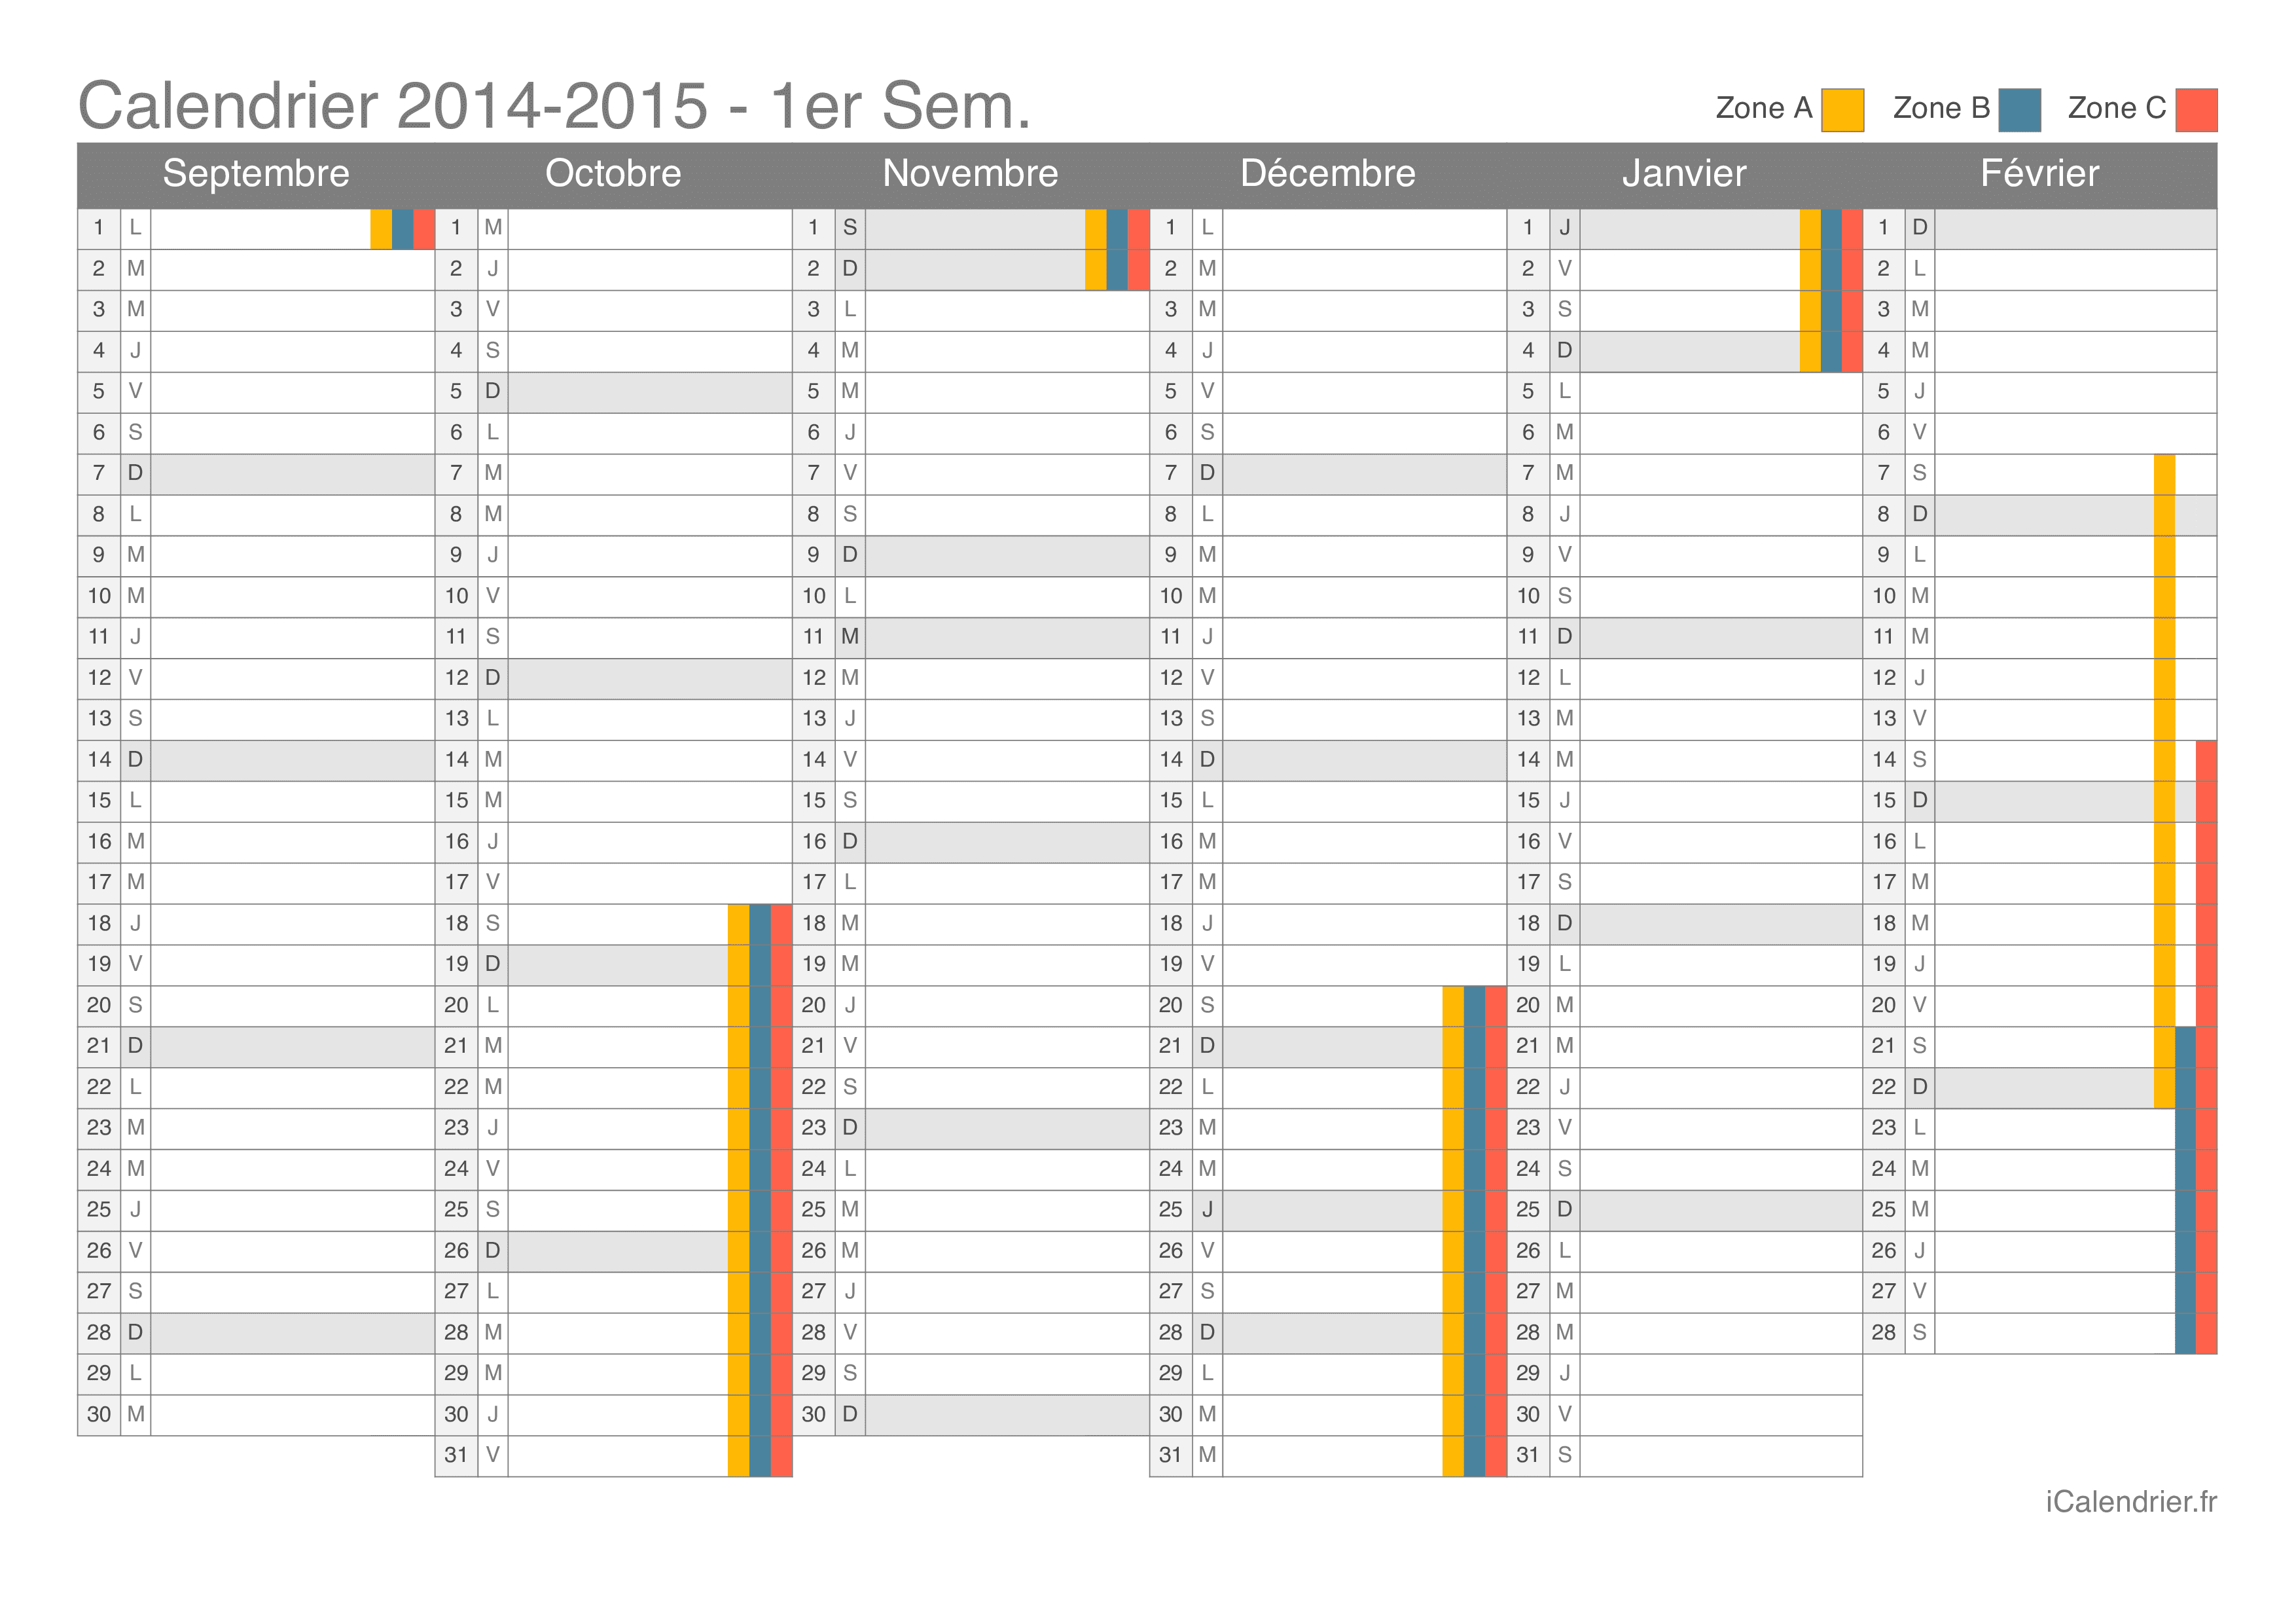 Calendrier des vacances scolaires 2014-2015 par semestre